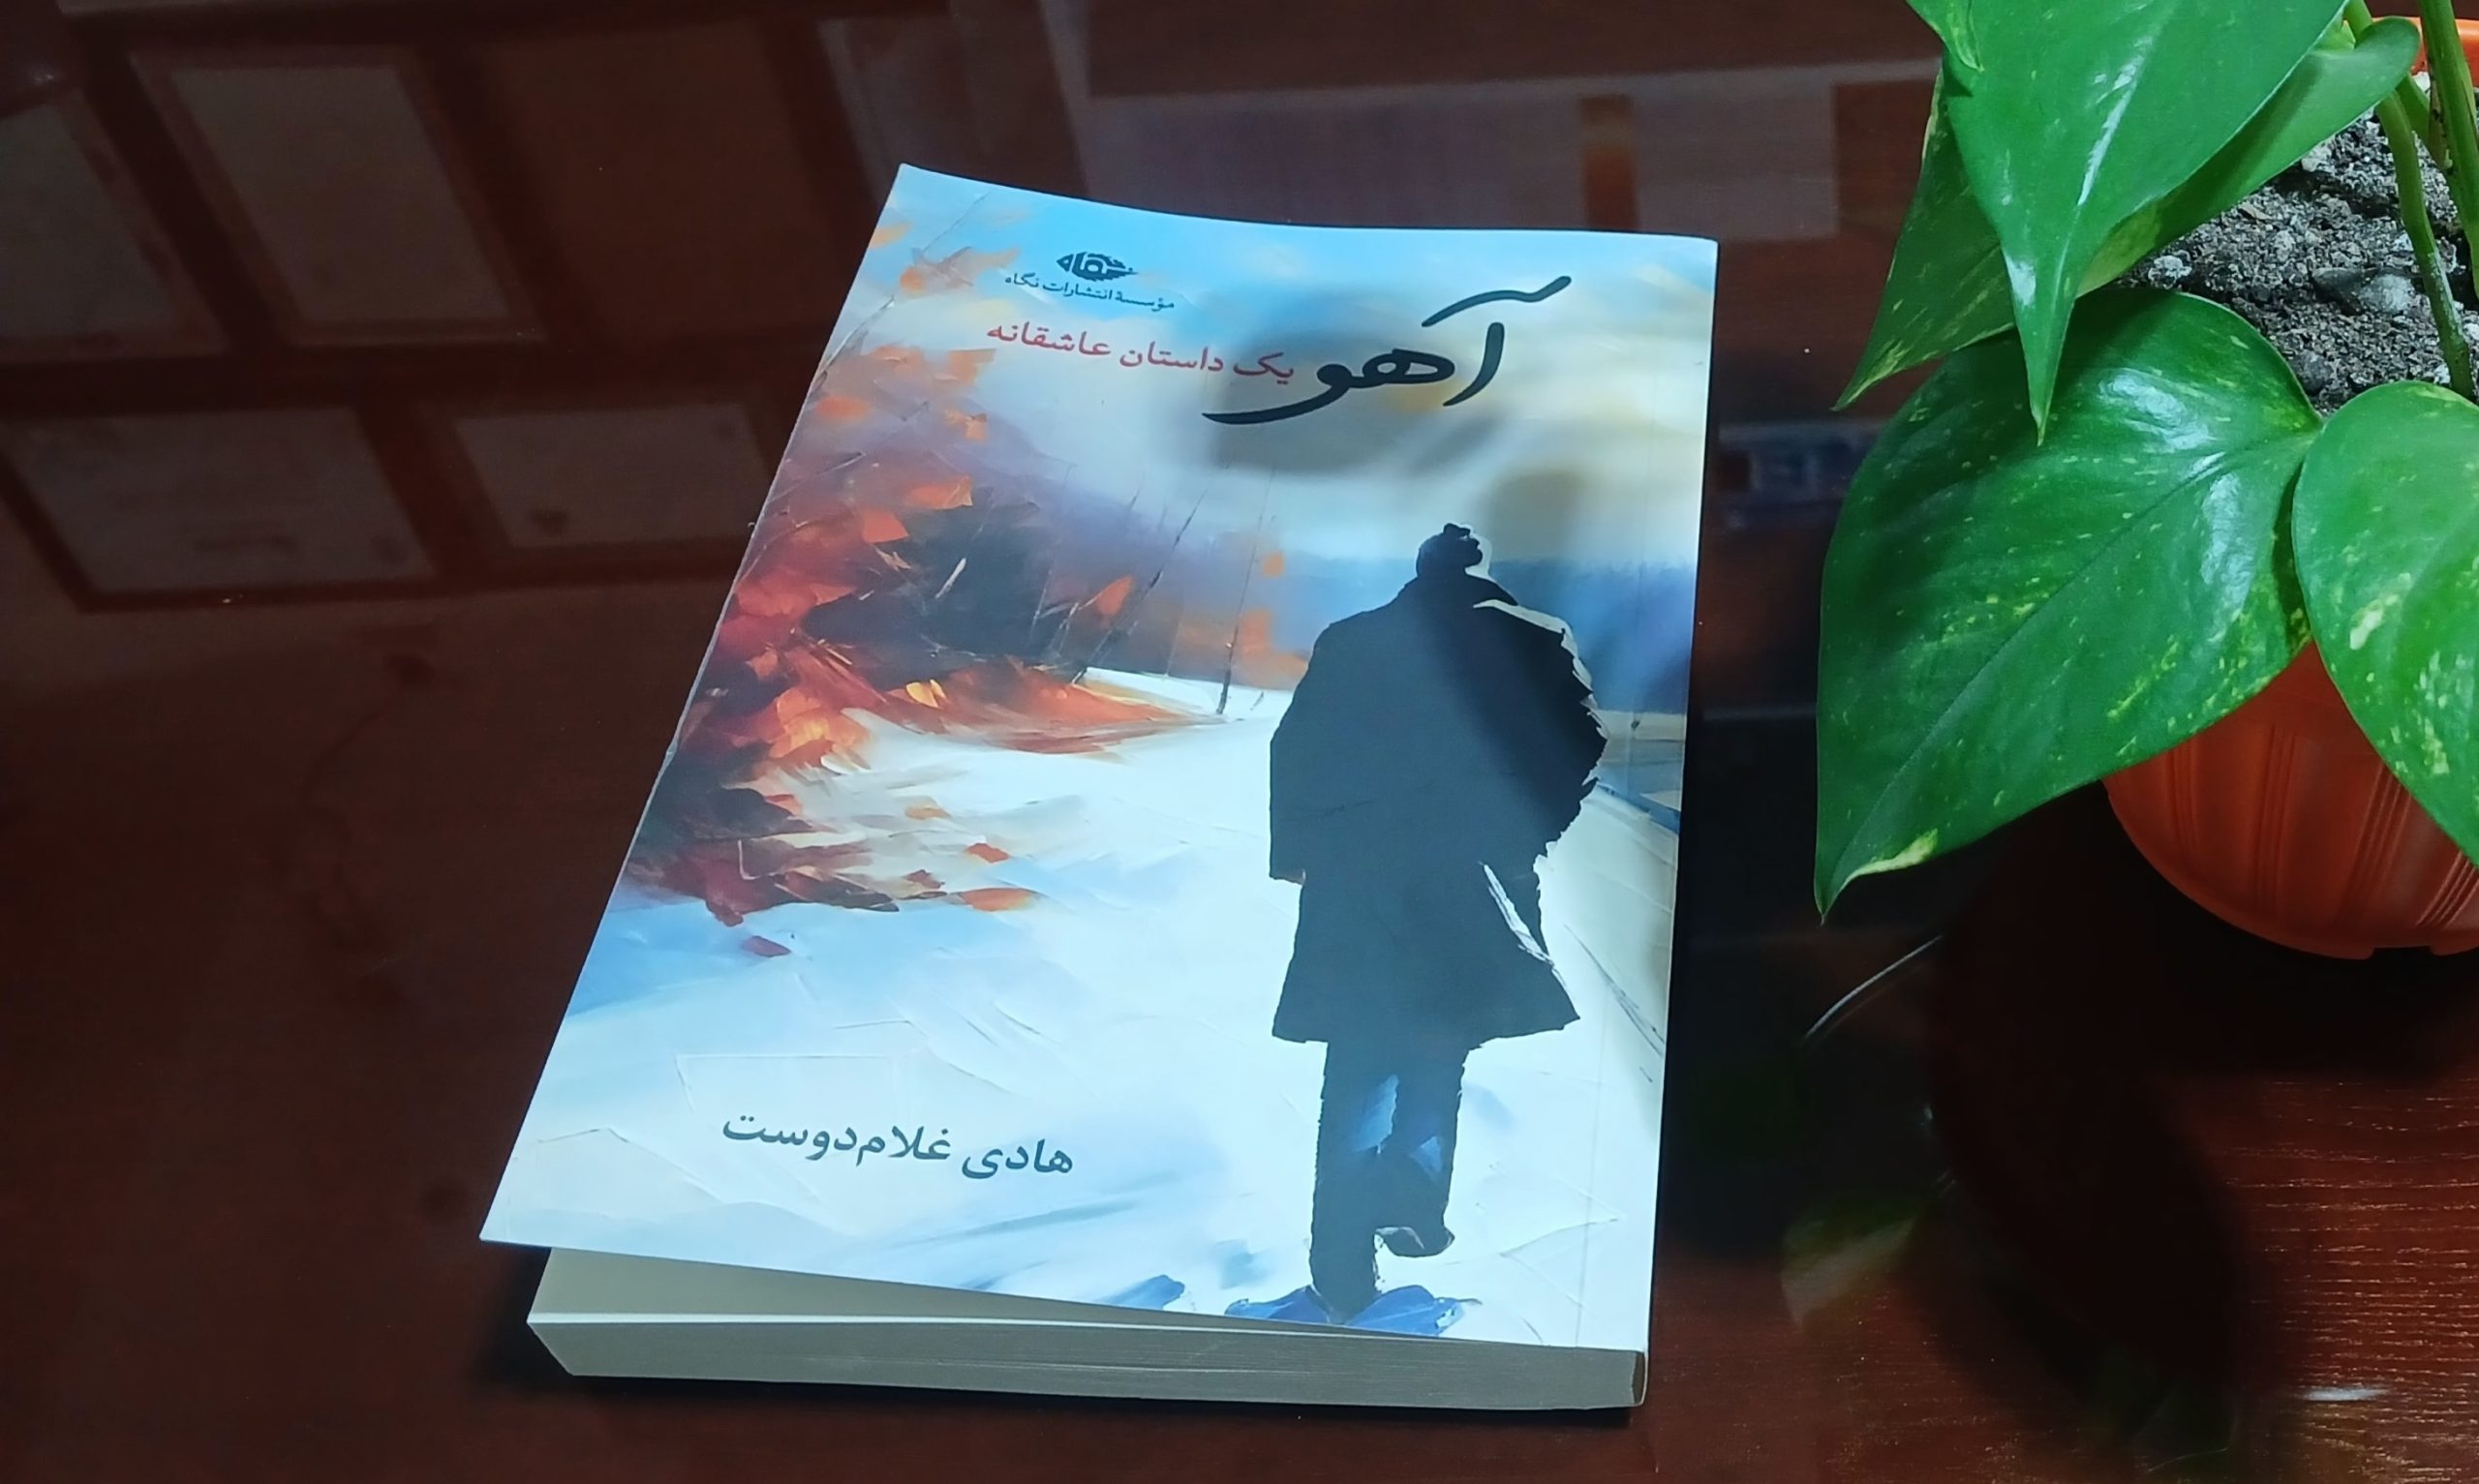 آهو، یک داستان عاشقانه + هادی غلام دوست